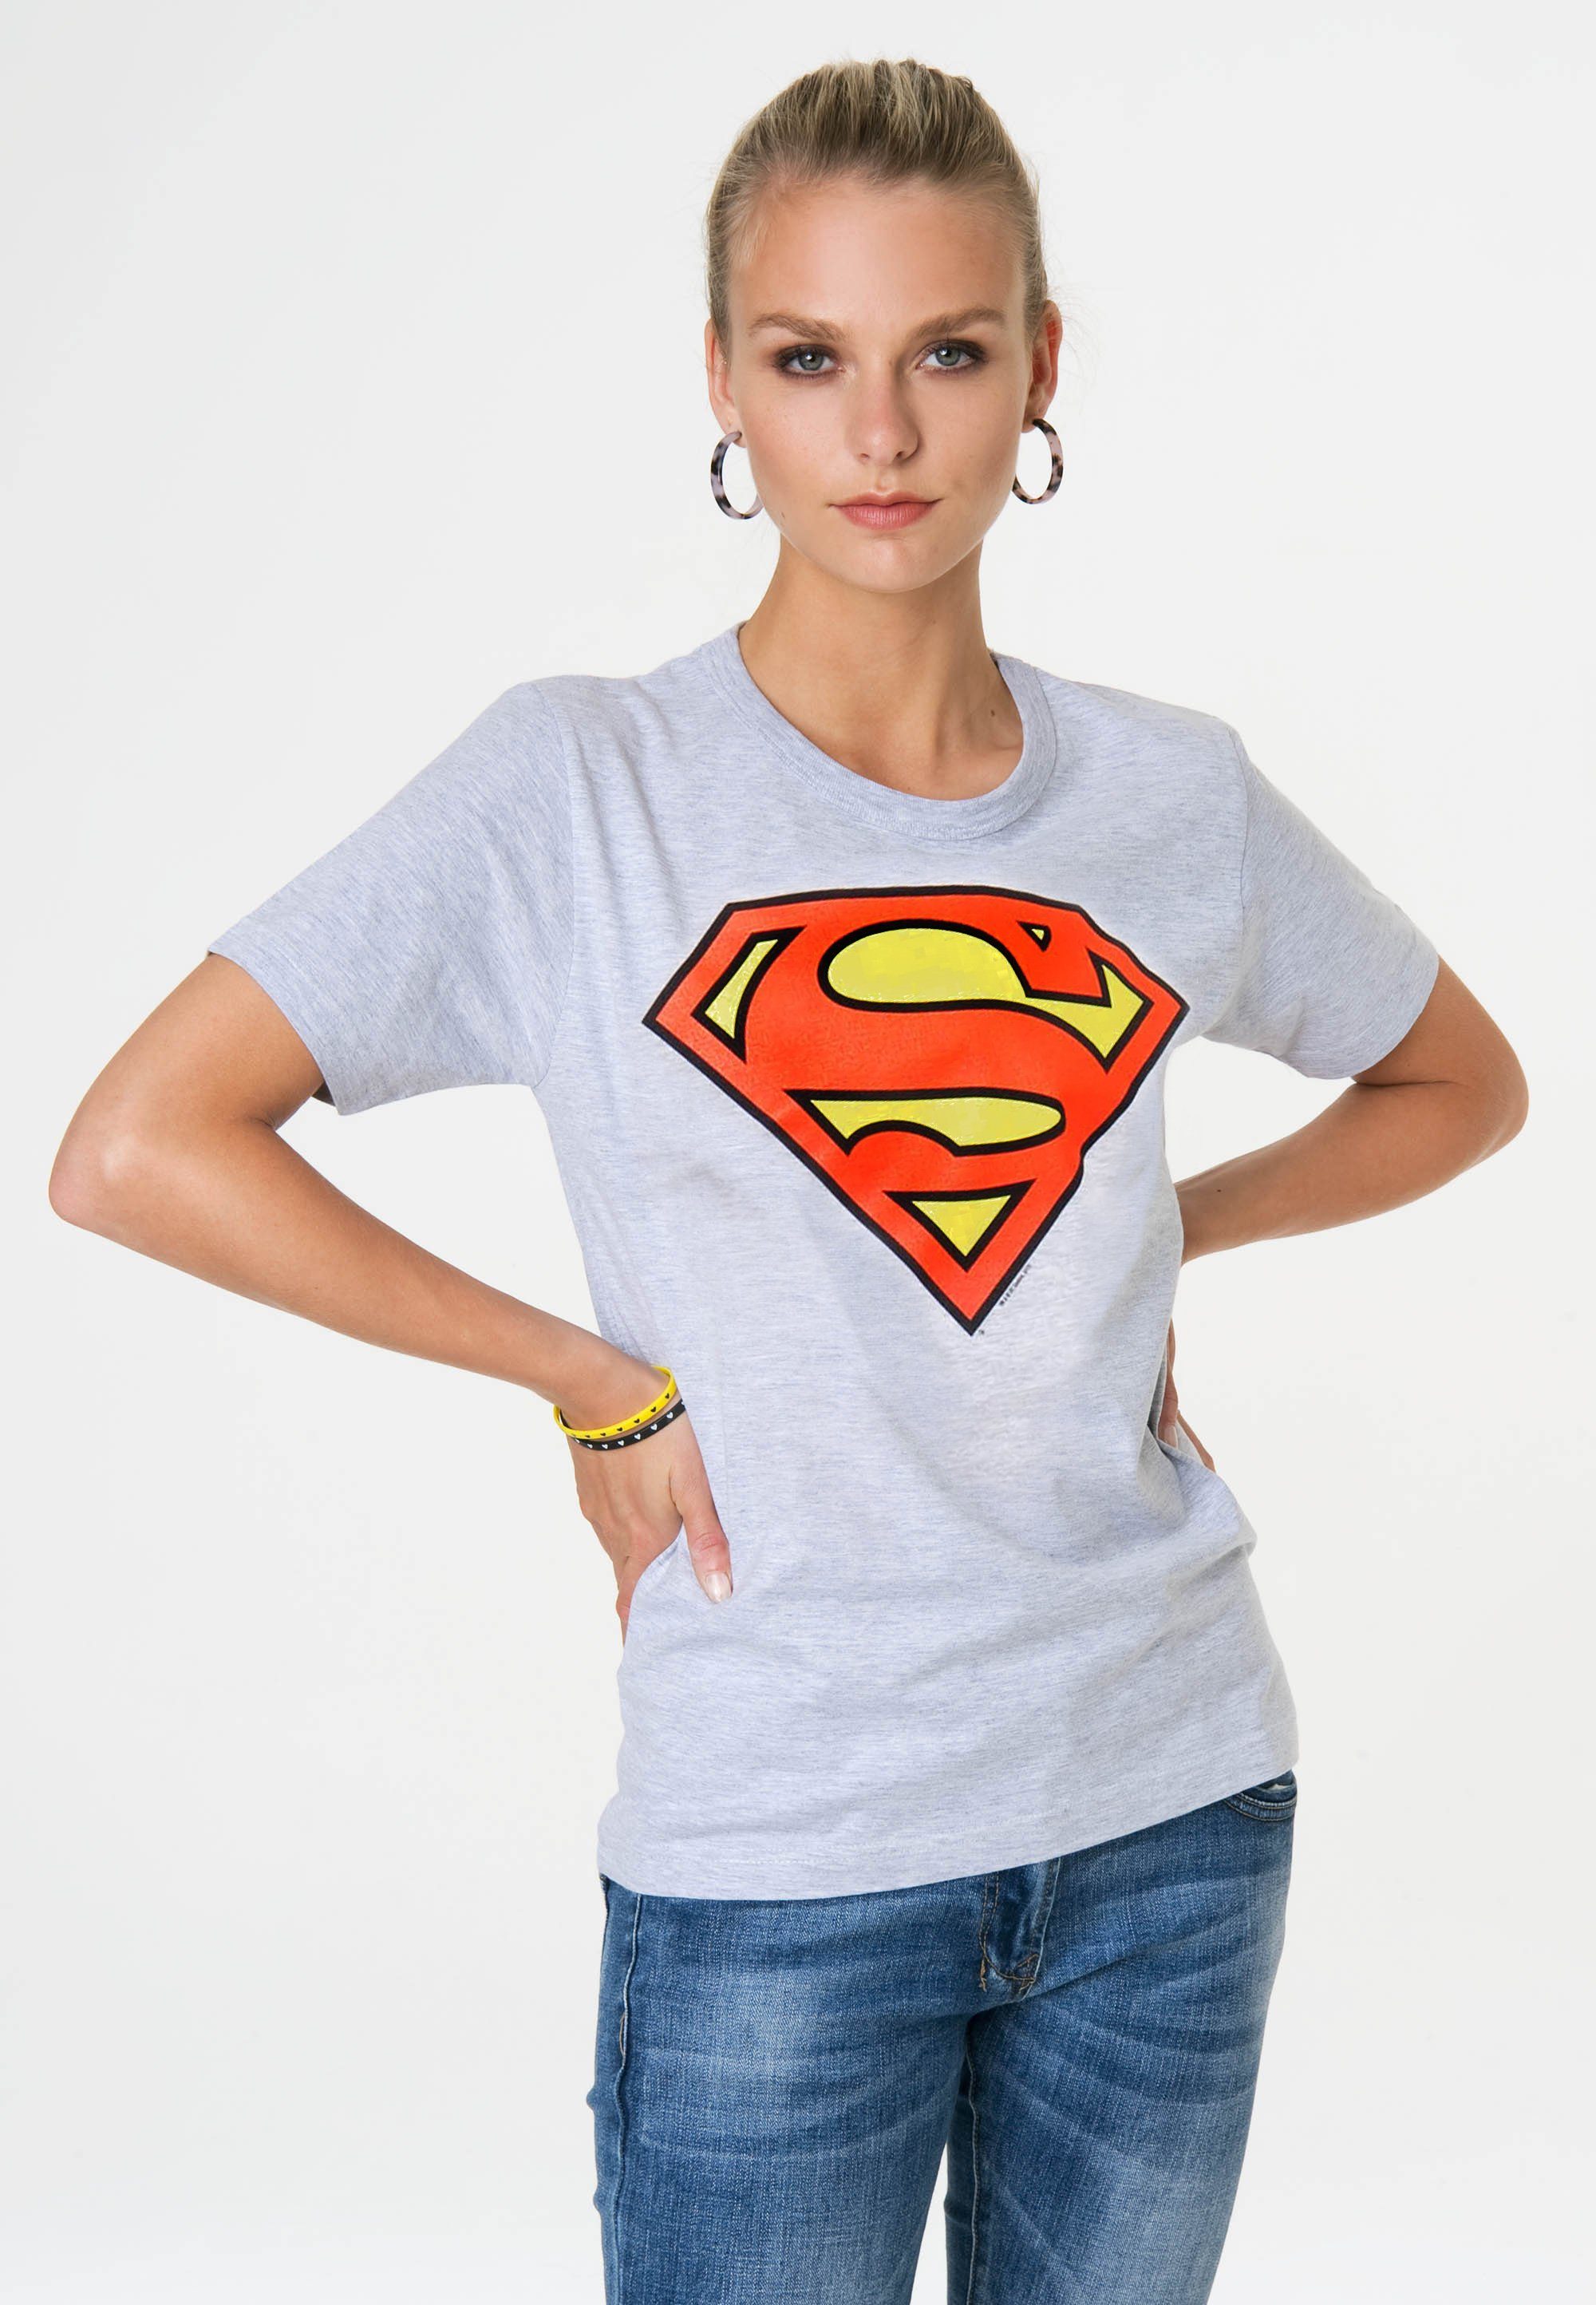 LOGOSHIRT trendigem grau-meliert T-Shirt Superhelden-Print Logo mit Superman